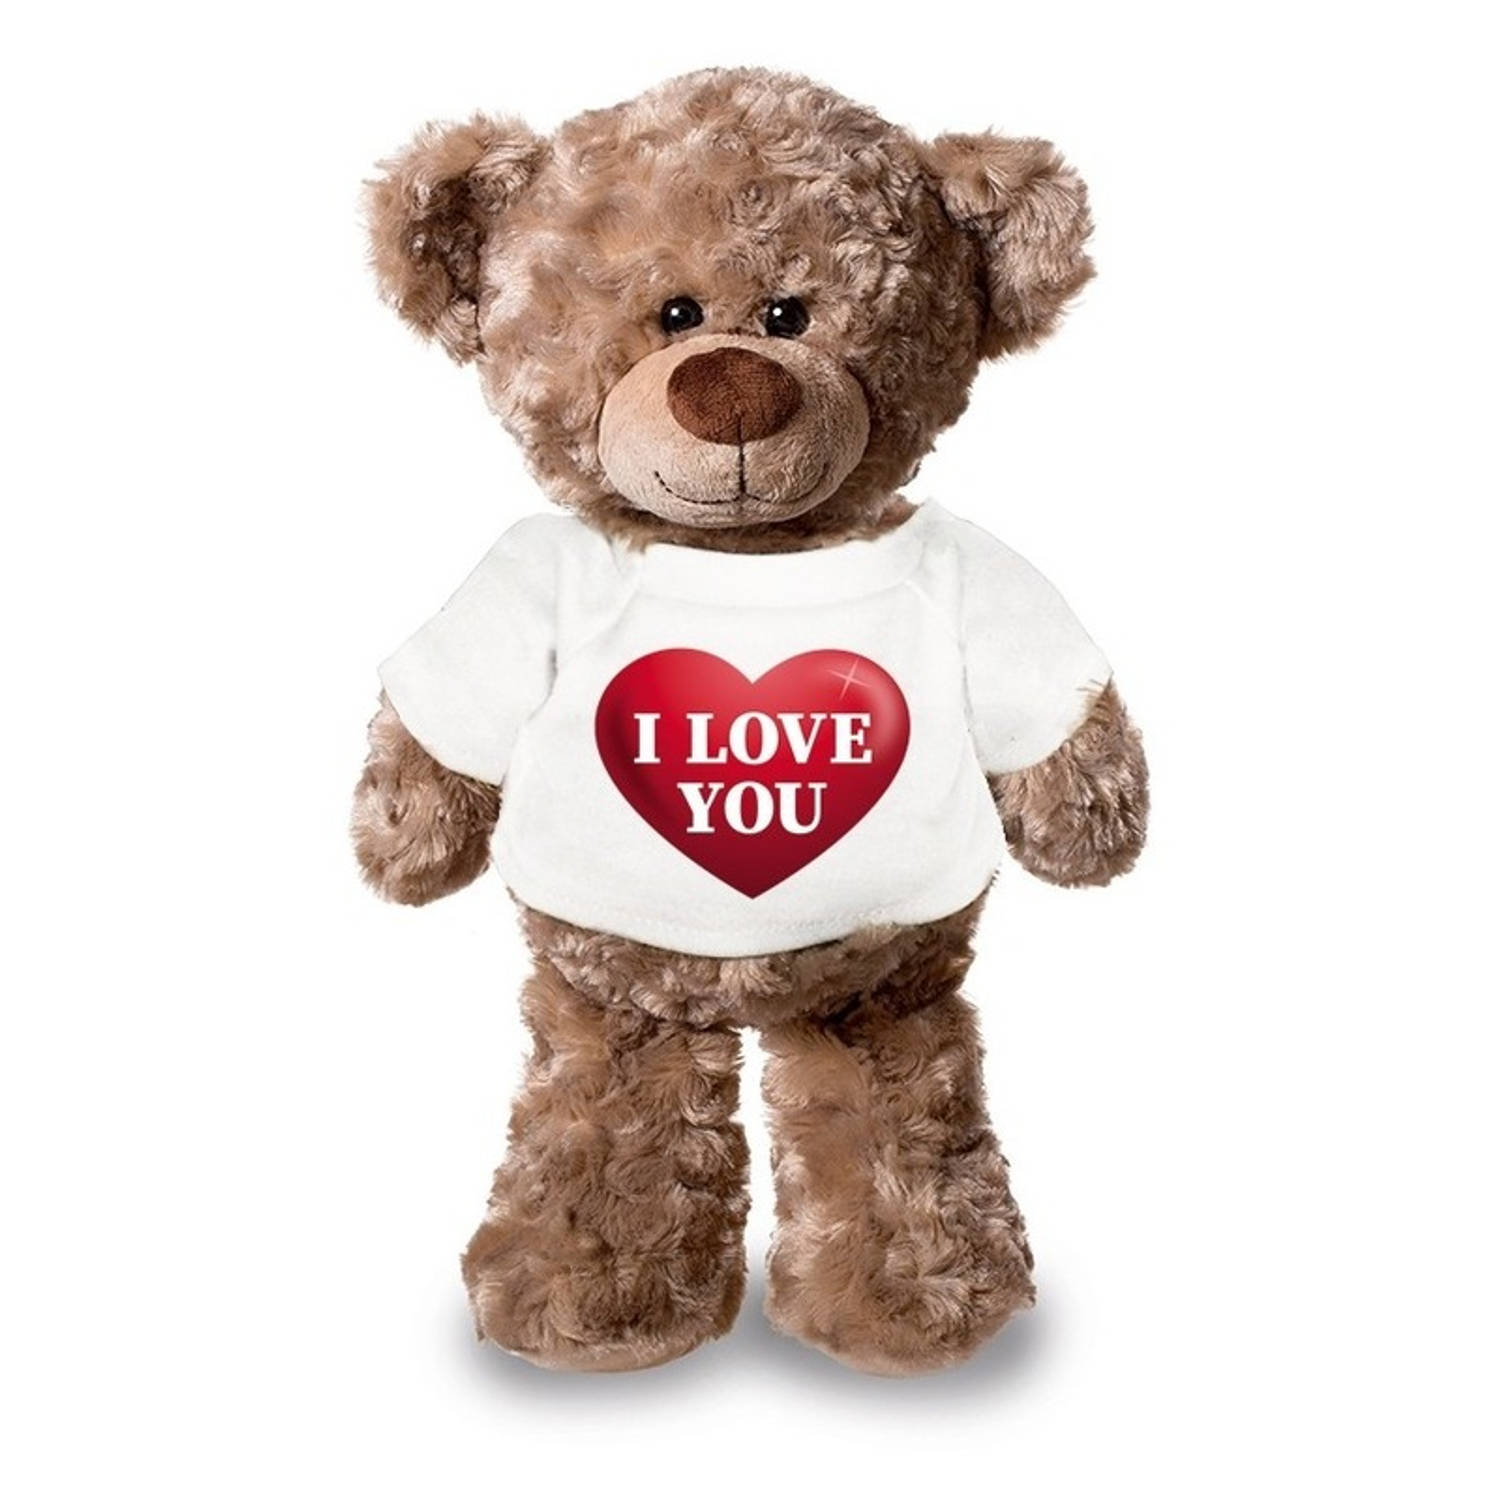 herinneringen Gebakjes hulp in de huishouding Knuffel beertje met I love you hartje shirt 24 cm - Knuffelberen | Blokker